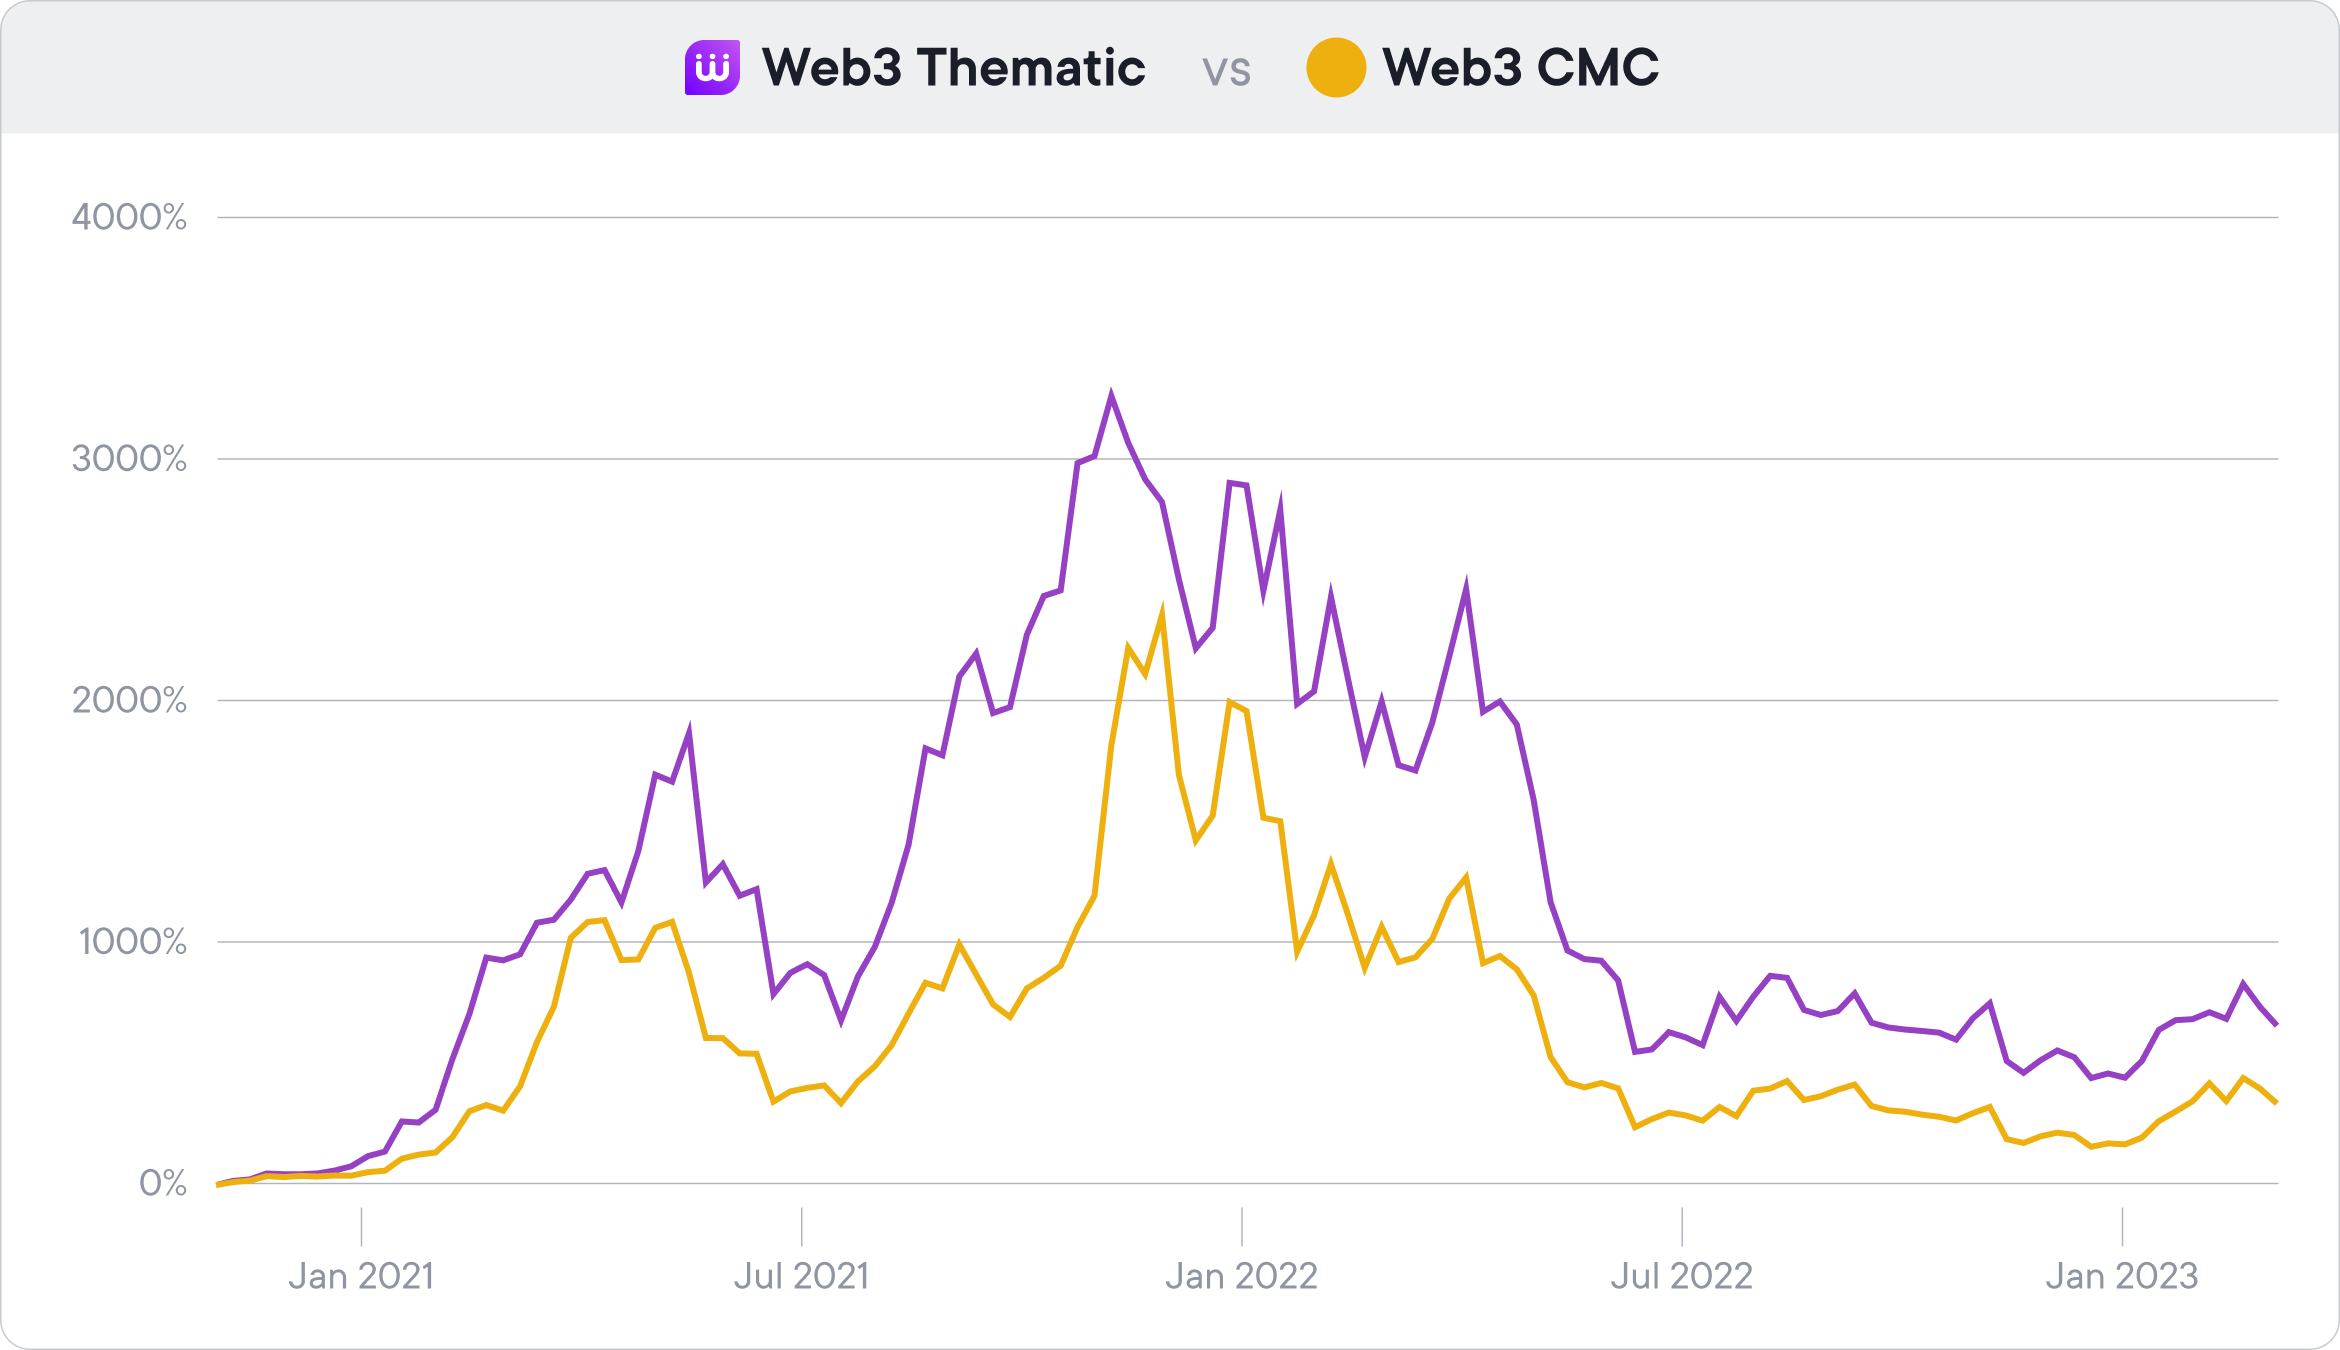 Web3 Thematic vs Web3 CMC